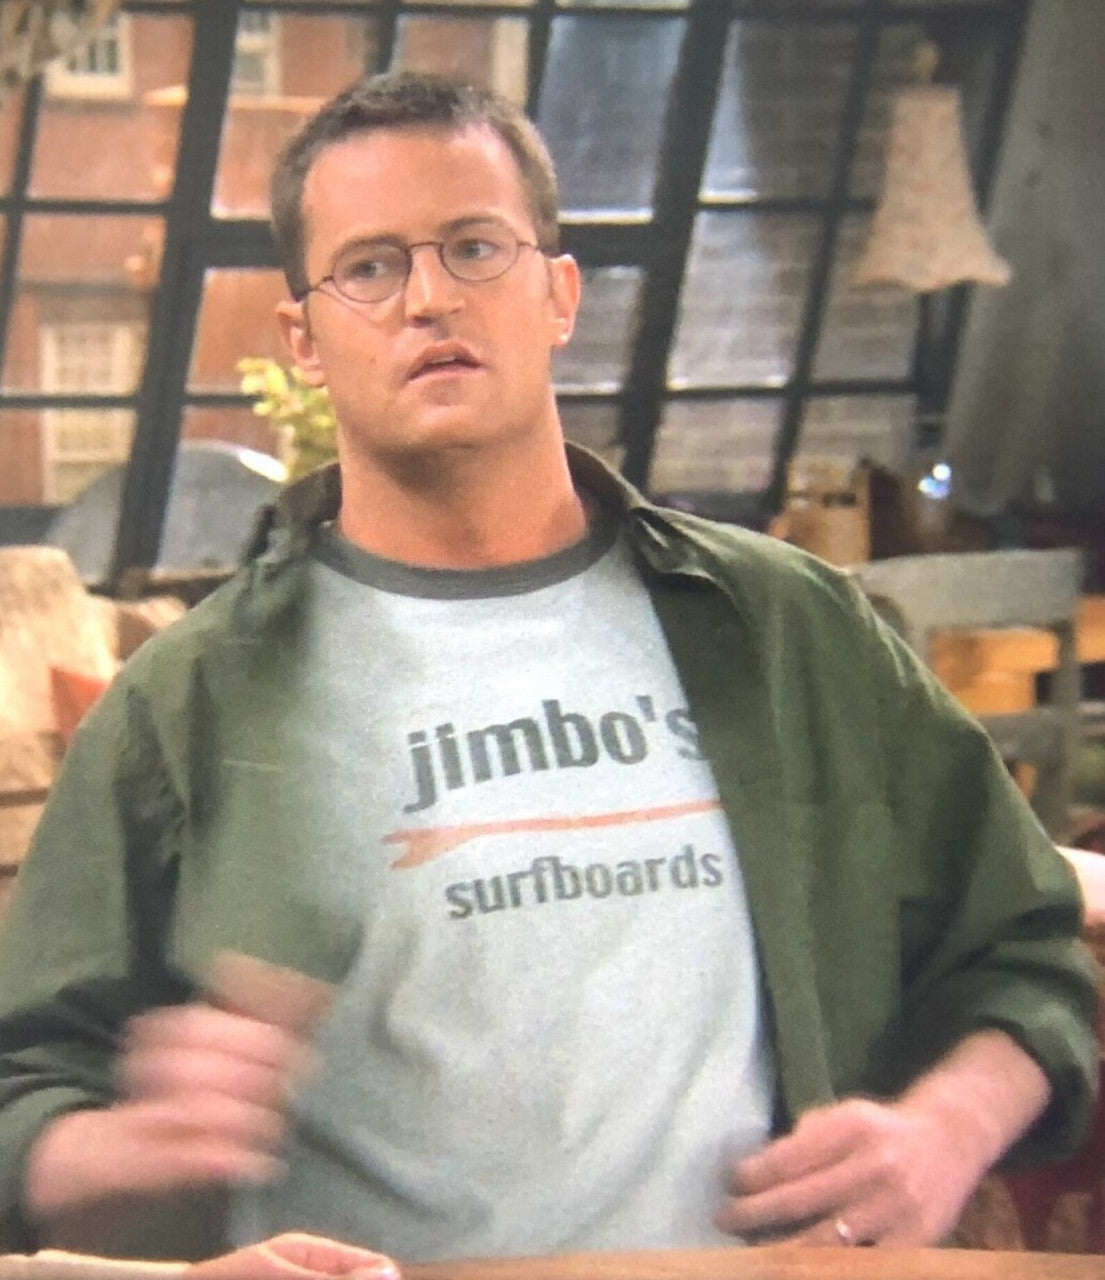 Jimbo's Surfboards KiSS Ringer T-Shirt - Friends - Chandler Bing inspired - TV Show - Surf